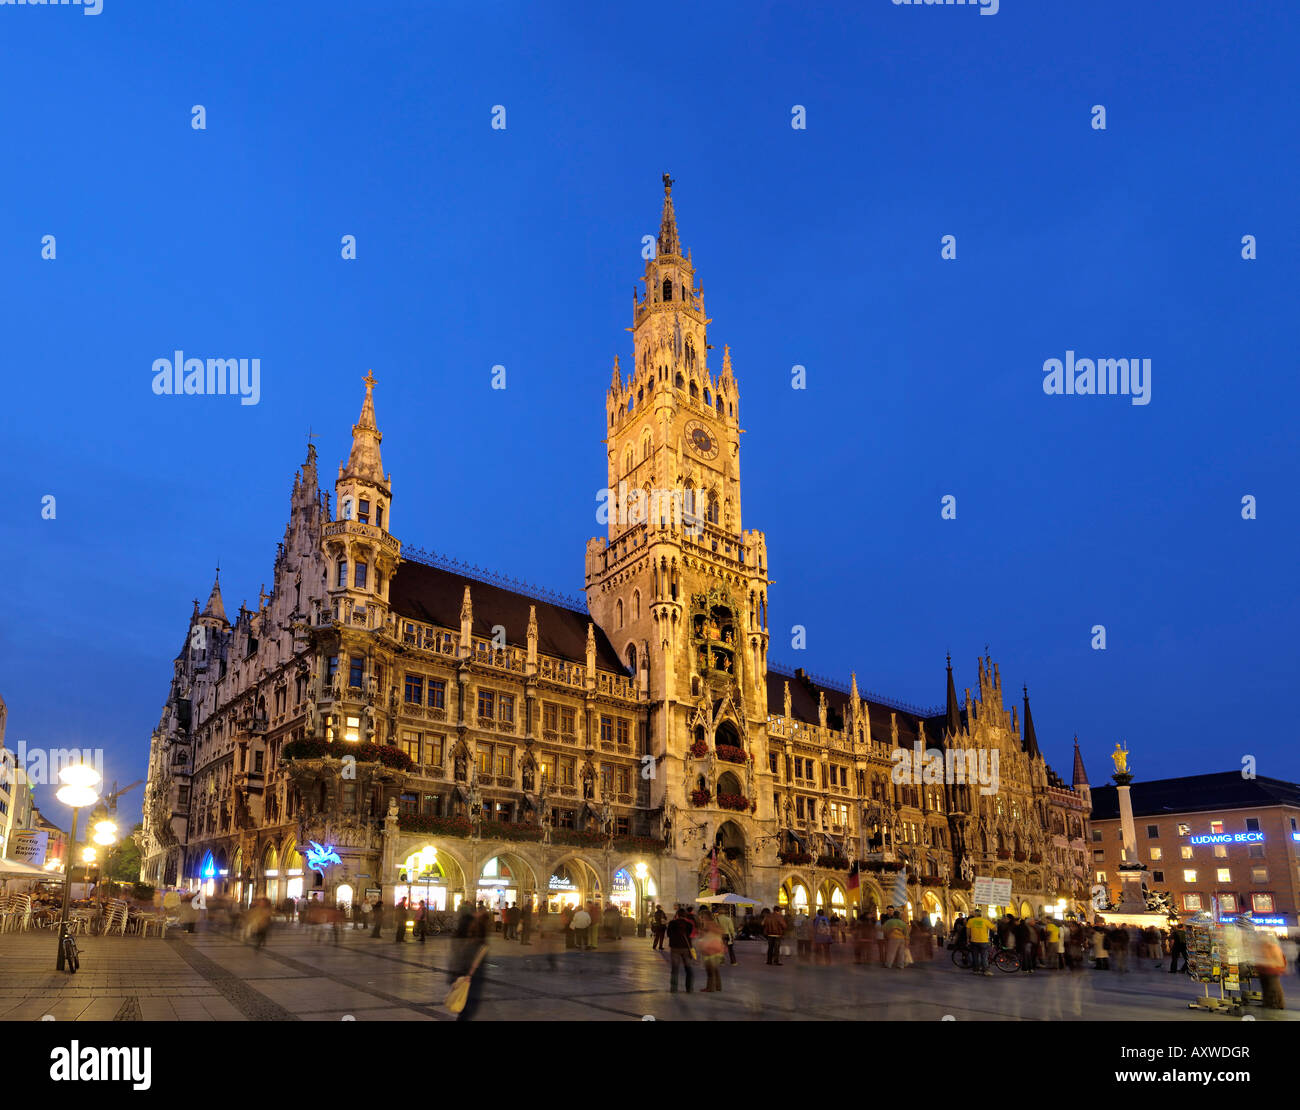 Neues Rathaus (neues Rathaus), Marienplatz, in der Nacht, München (München / München), Bayern (Bayern), Deutschland Stockfoto